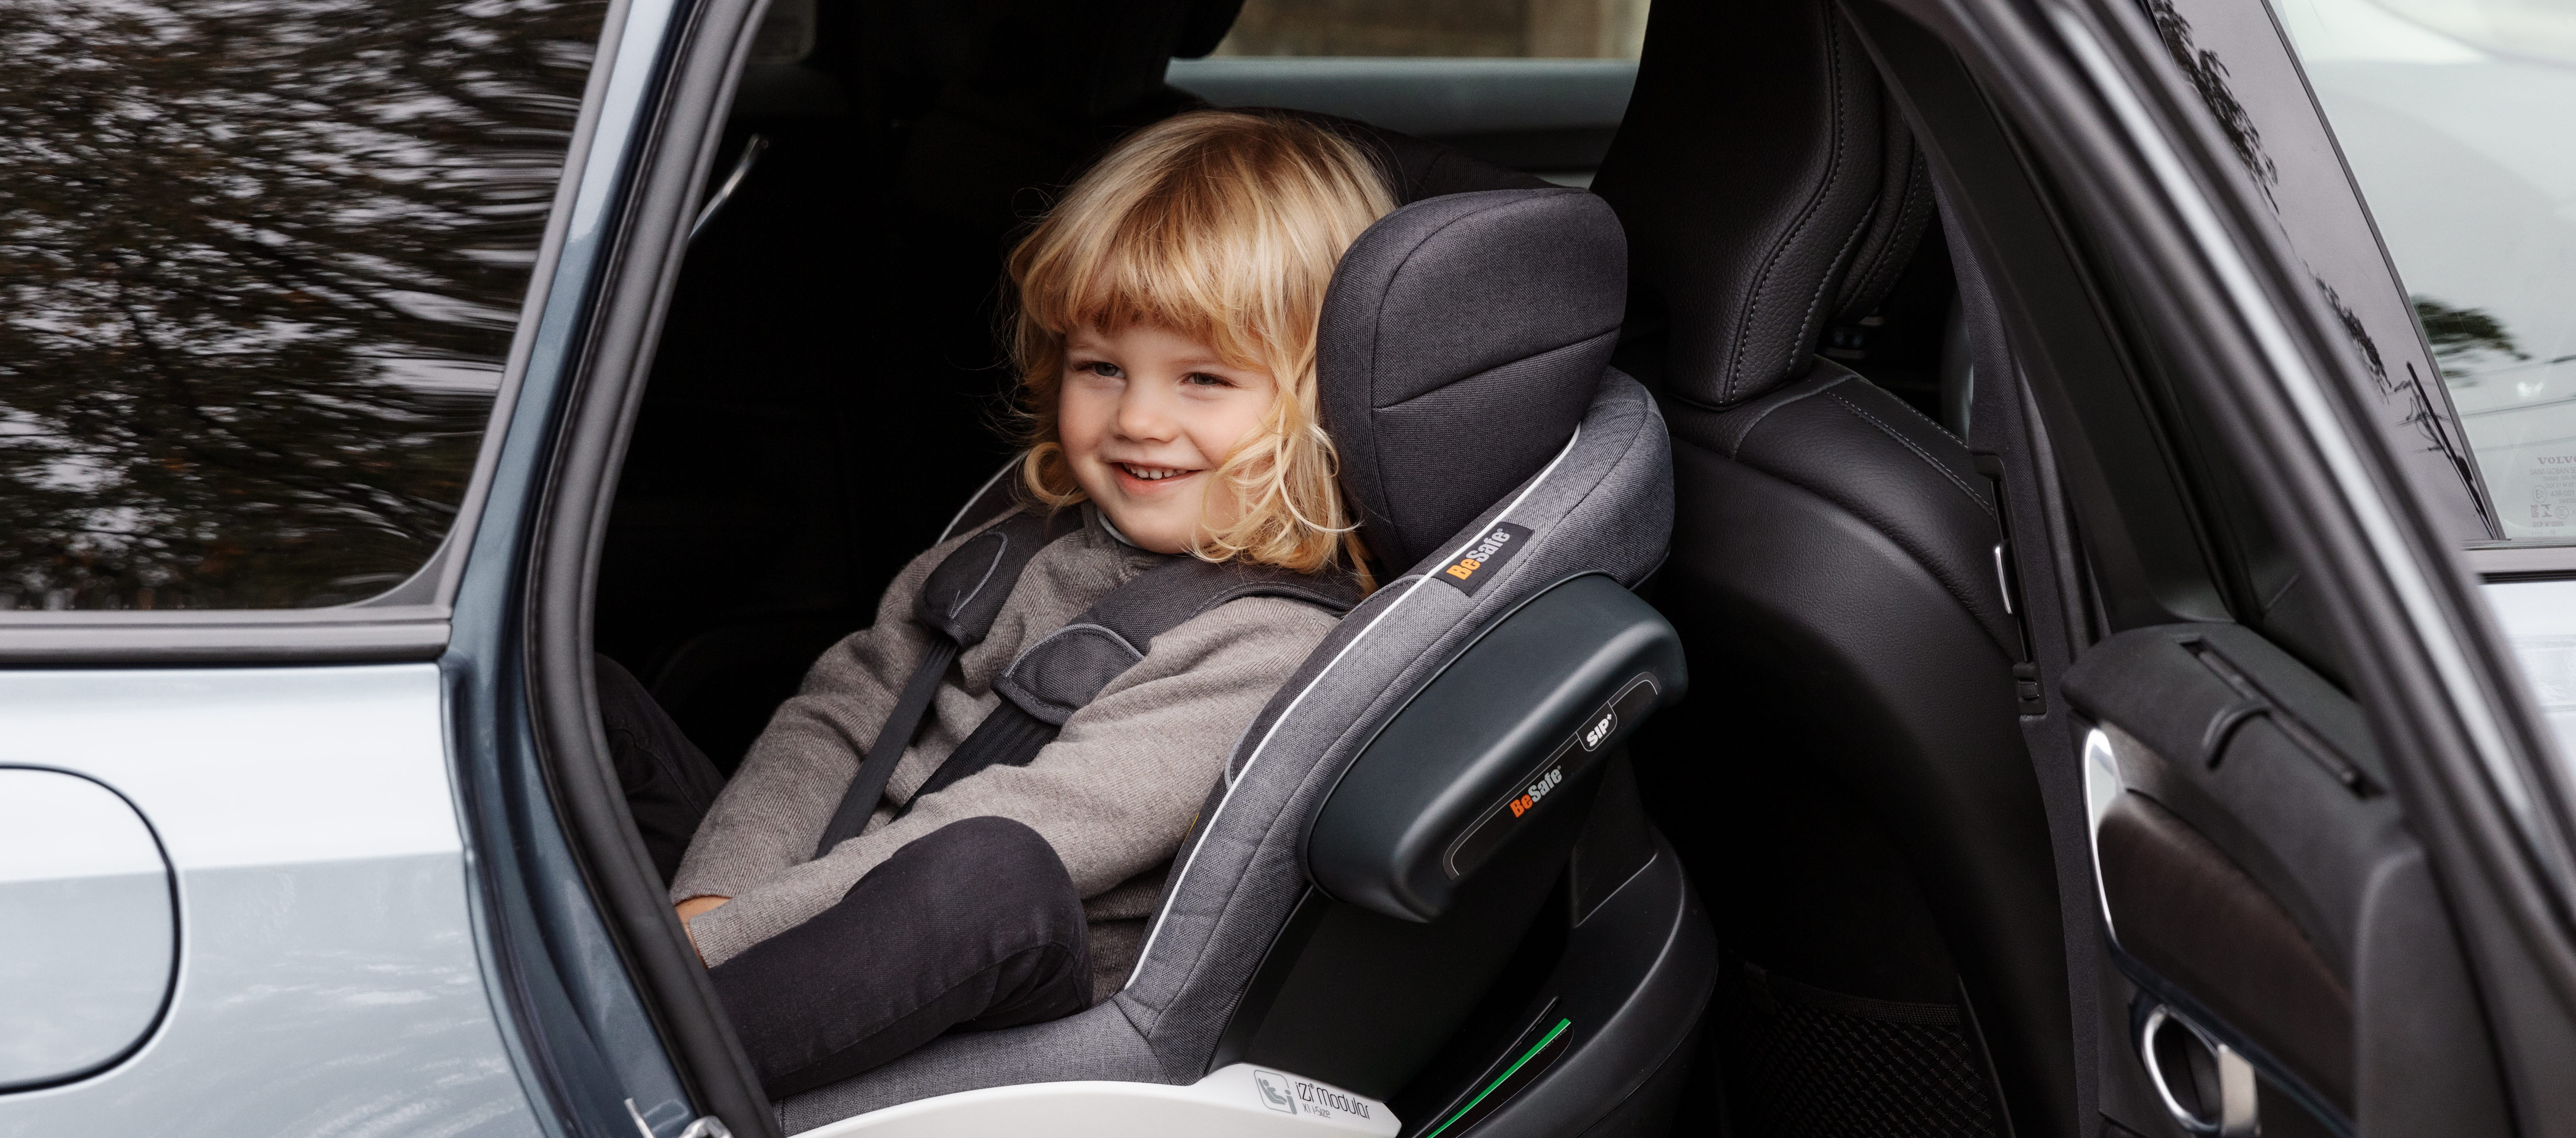 Quand changer de siège auto enfants – vue d'ensemble complète